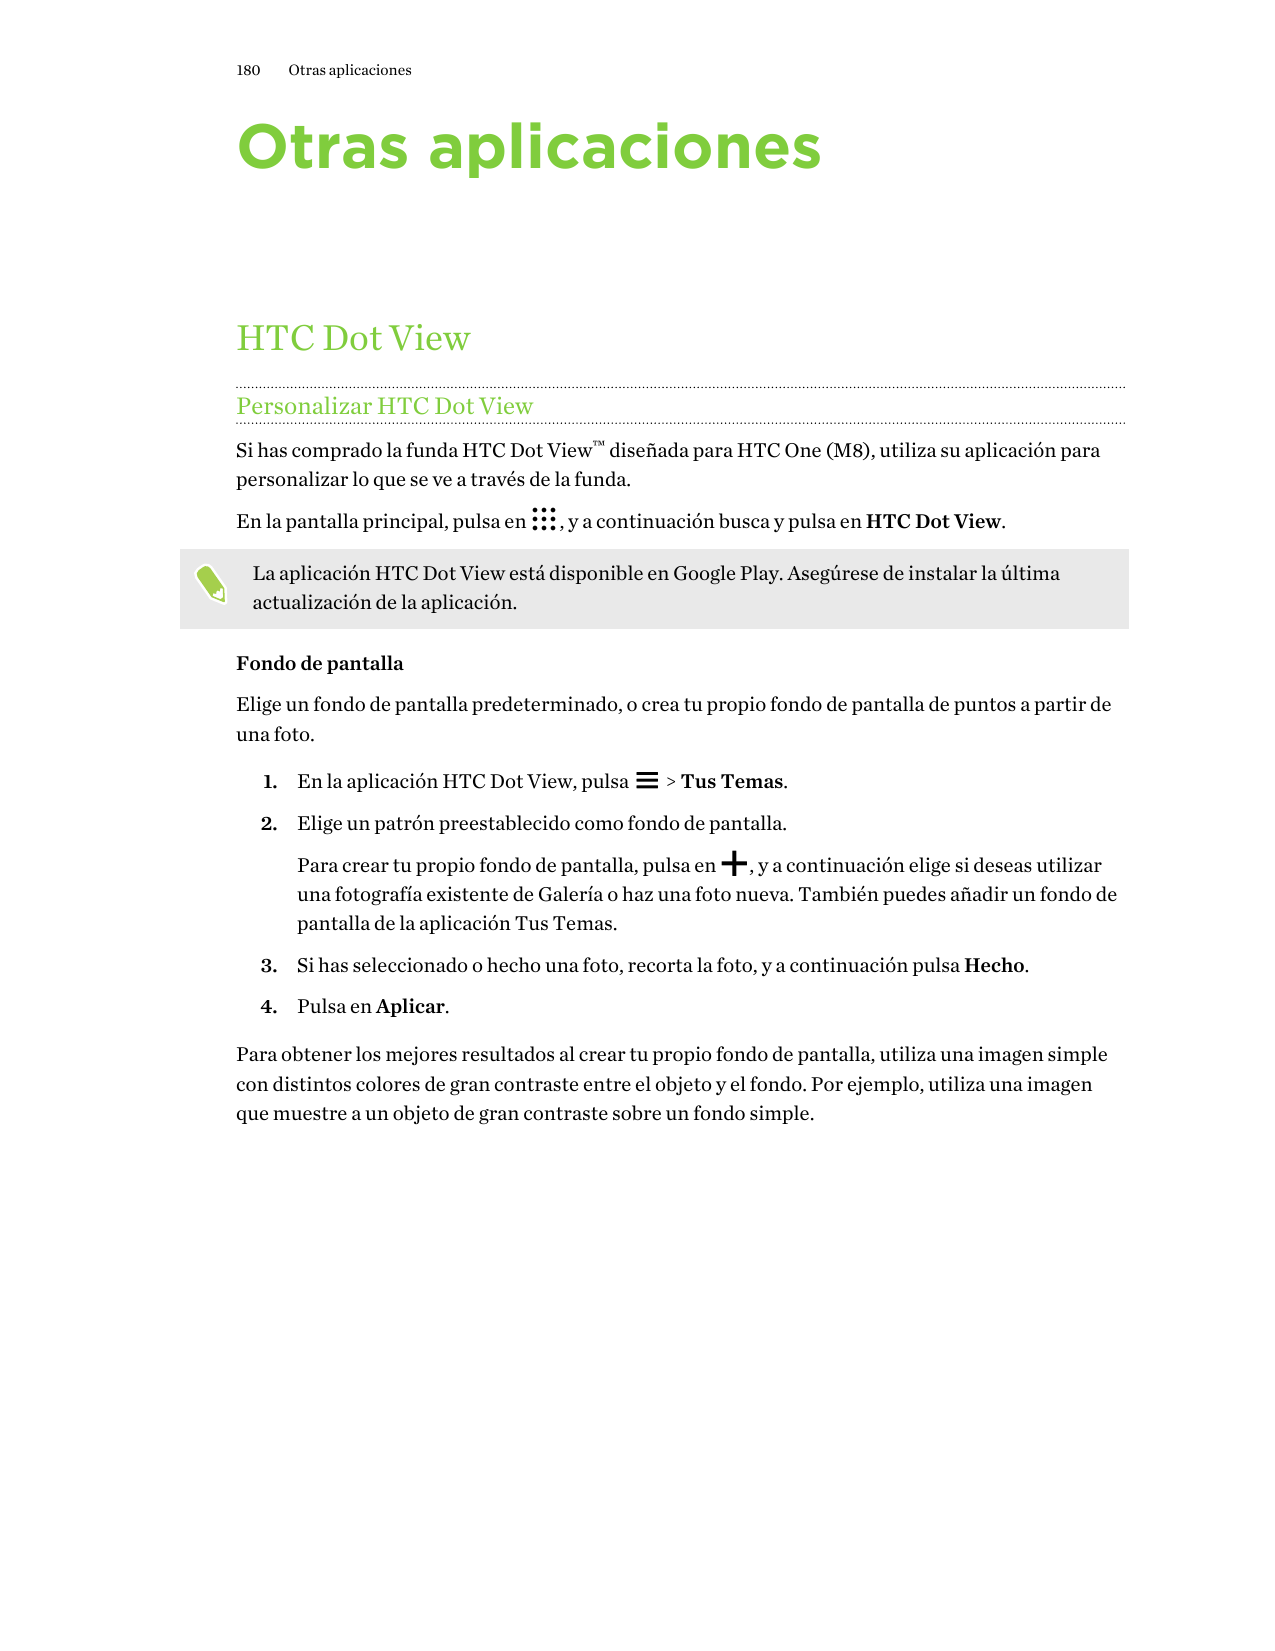 180Otras aplicacionesOtras aplicacionesHTC Dot ViewPersonalizar HTC Dot ViewSi has comprado la funda HTC Dot View™ diseñada para